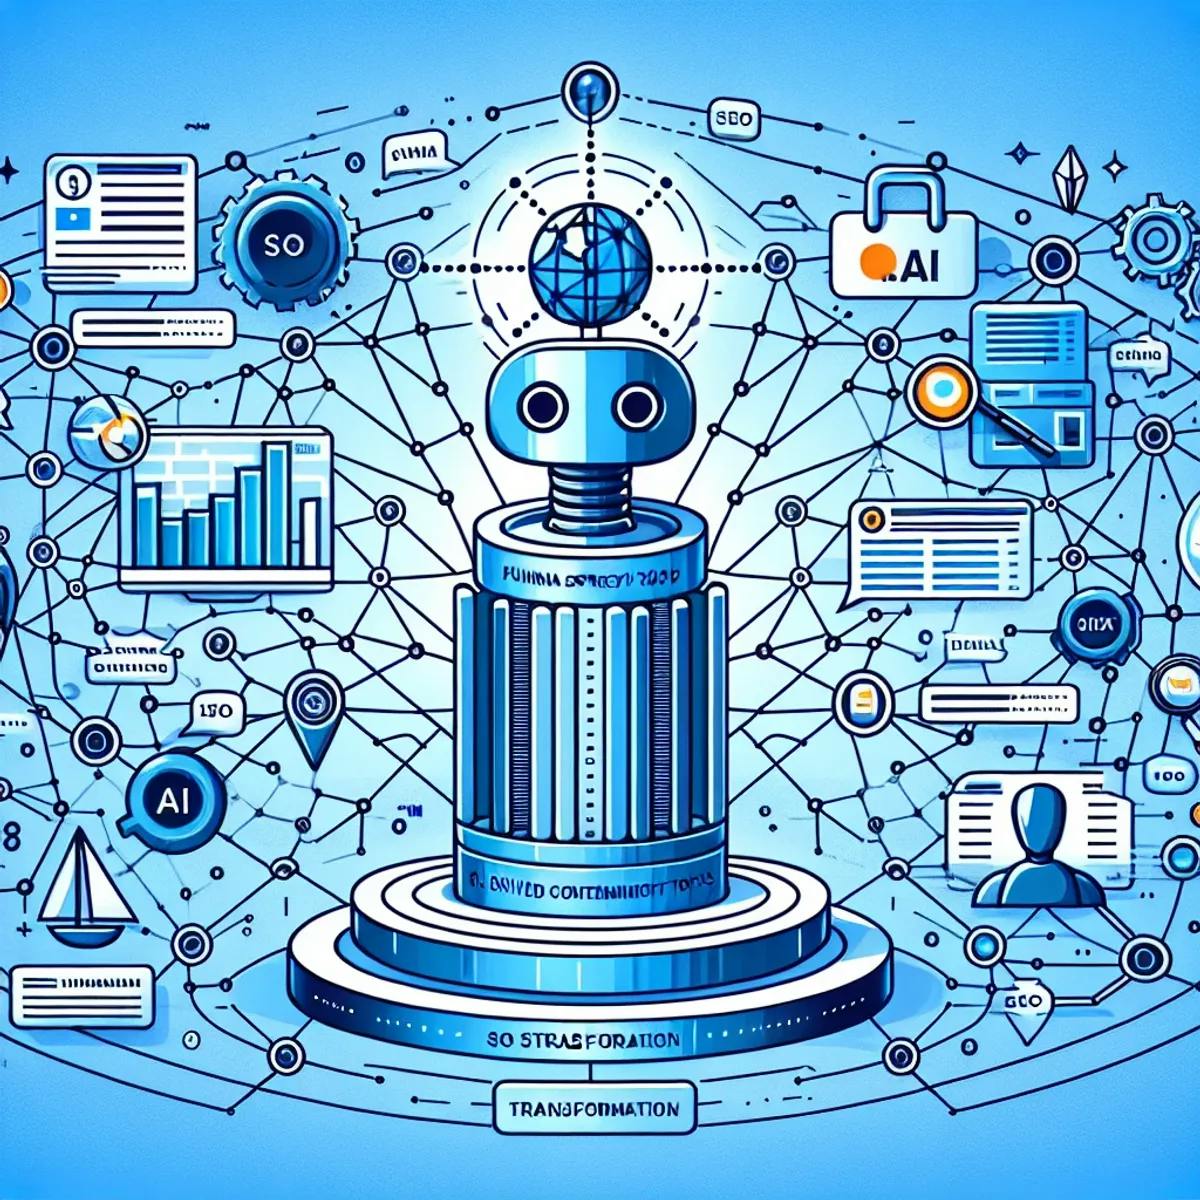 AIによるSEO戦略の変革：さまざまなユーザーのクエリや関与を象徴する相互リンクされたネットワークに囲まれた大きな柱、ロボットの手とサーフボードのような象徴的なツールもAIがSEOで使用されることを表しています。